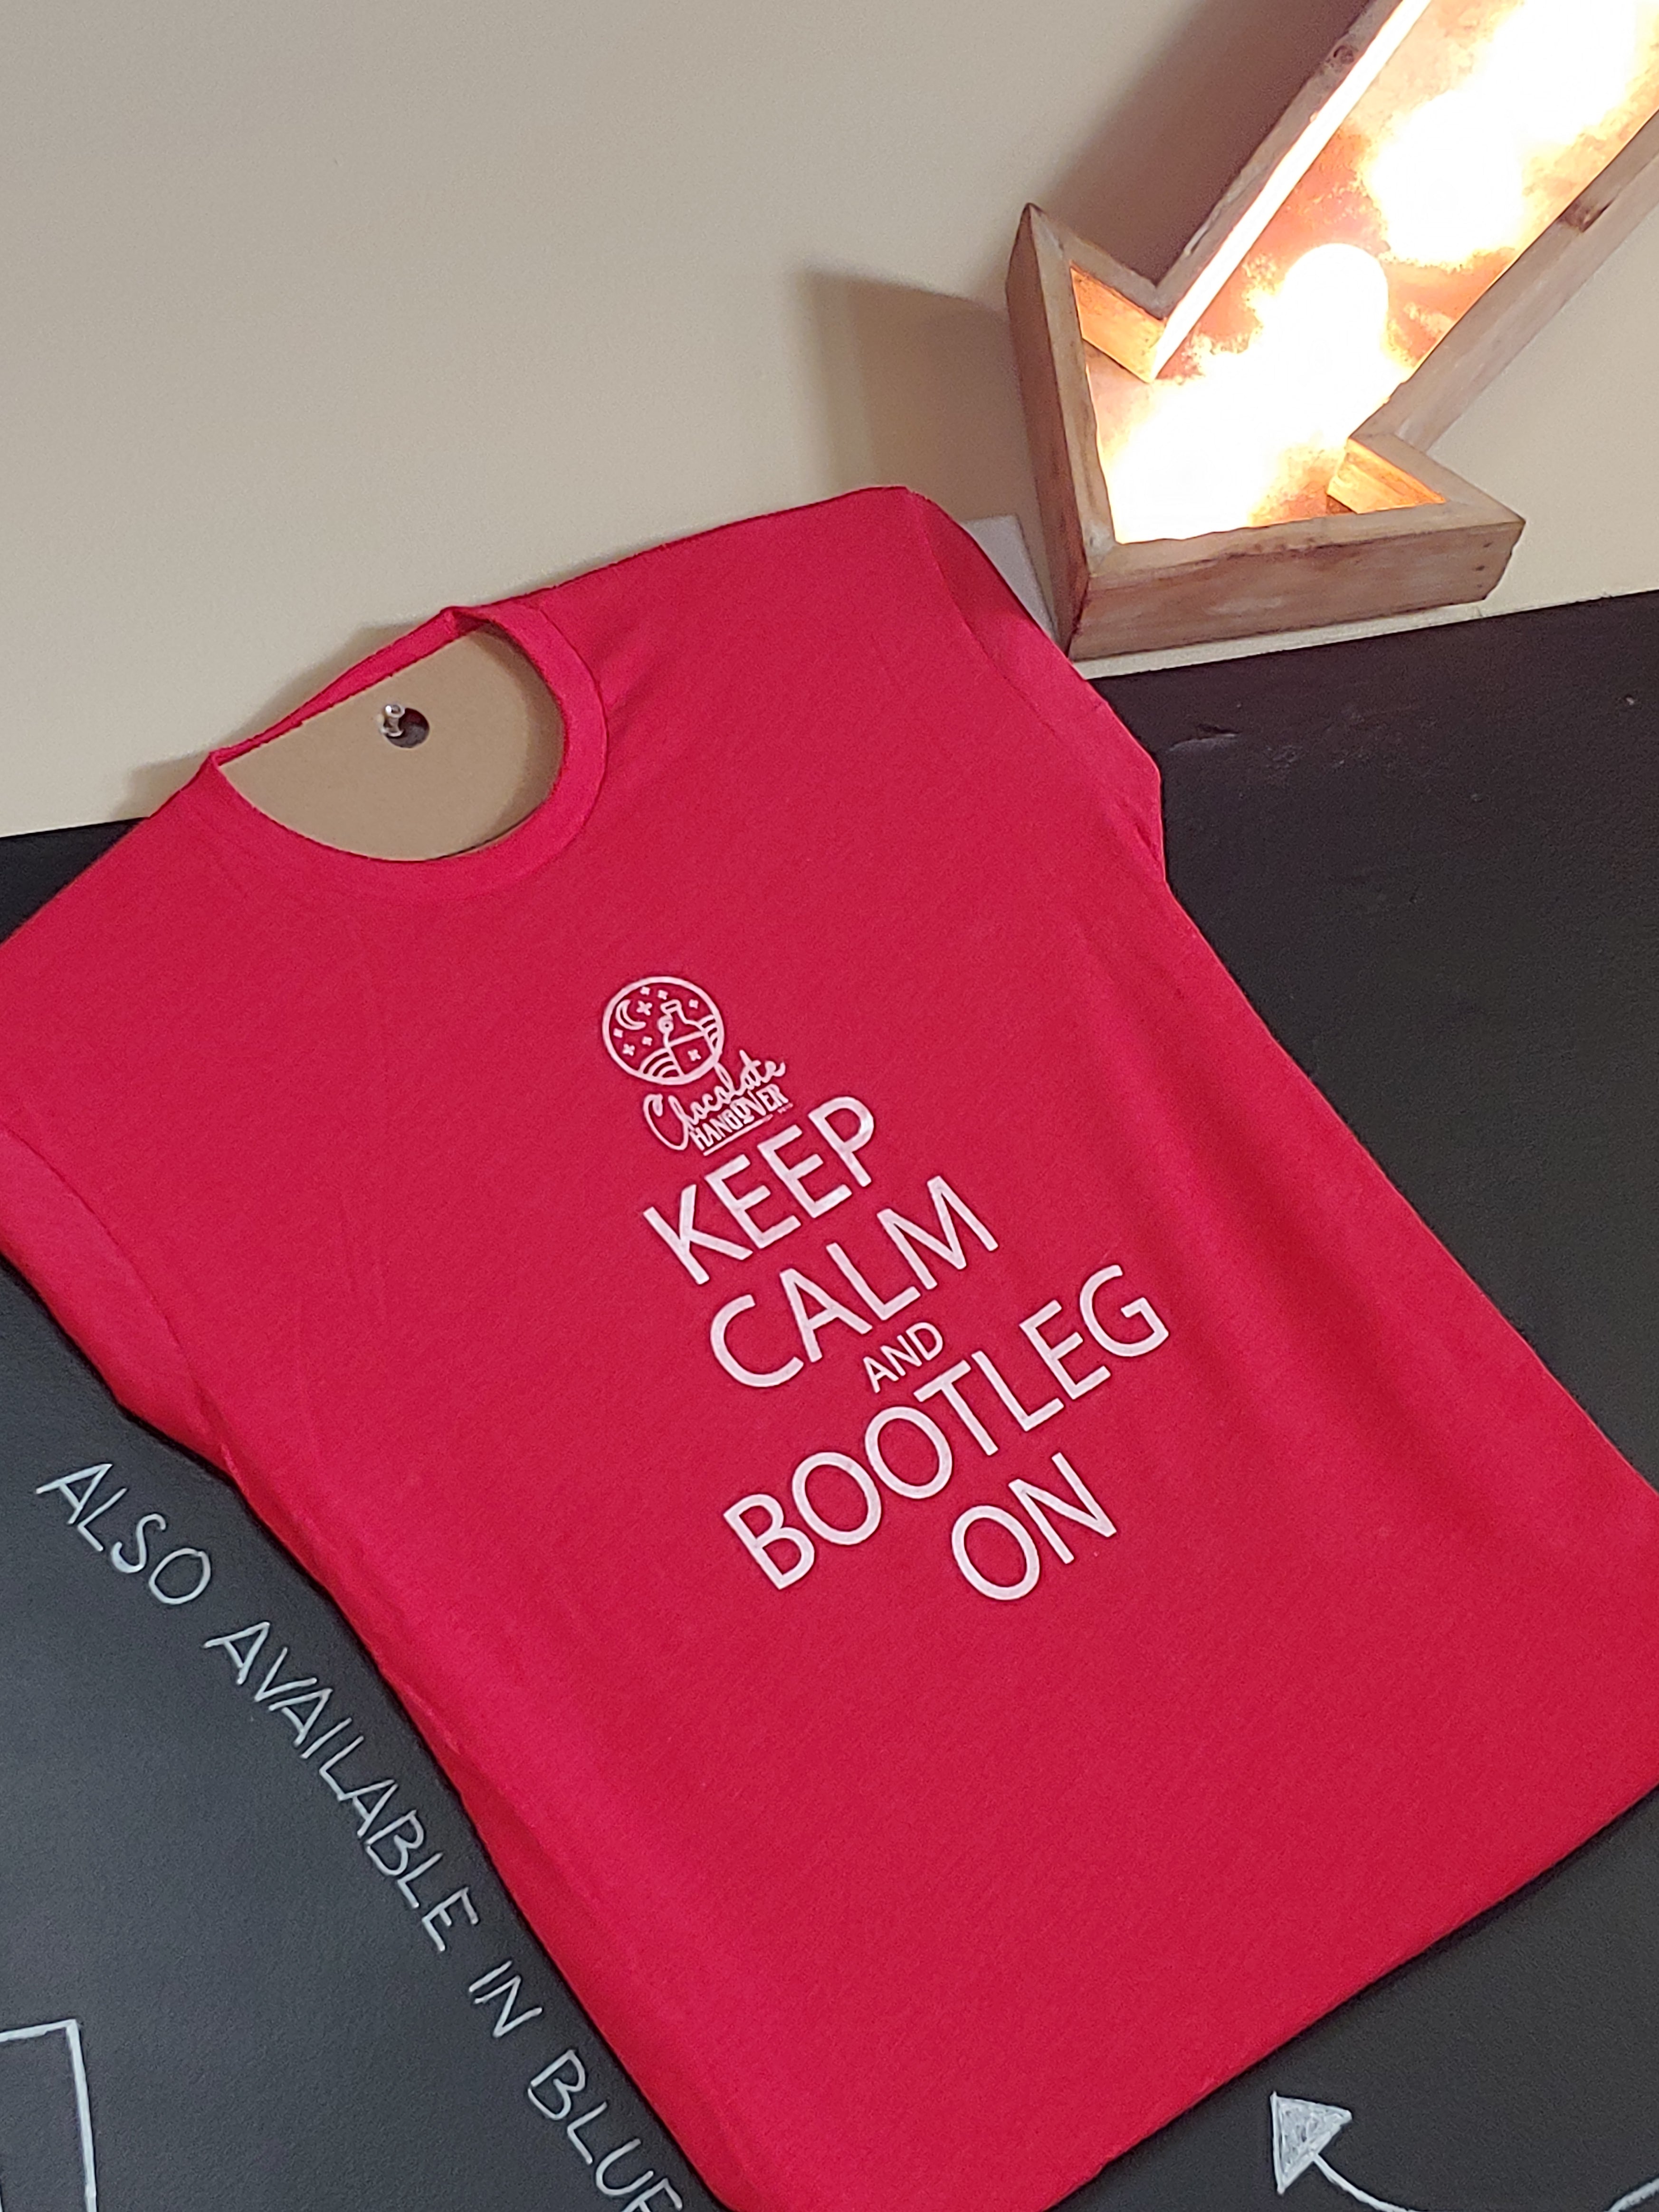 Keep Calm and Bootleg On T-shirt